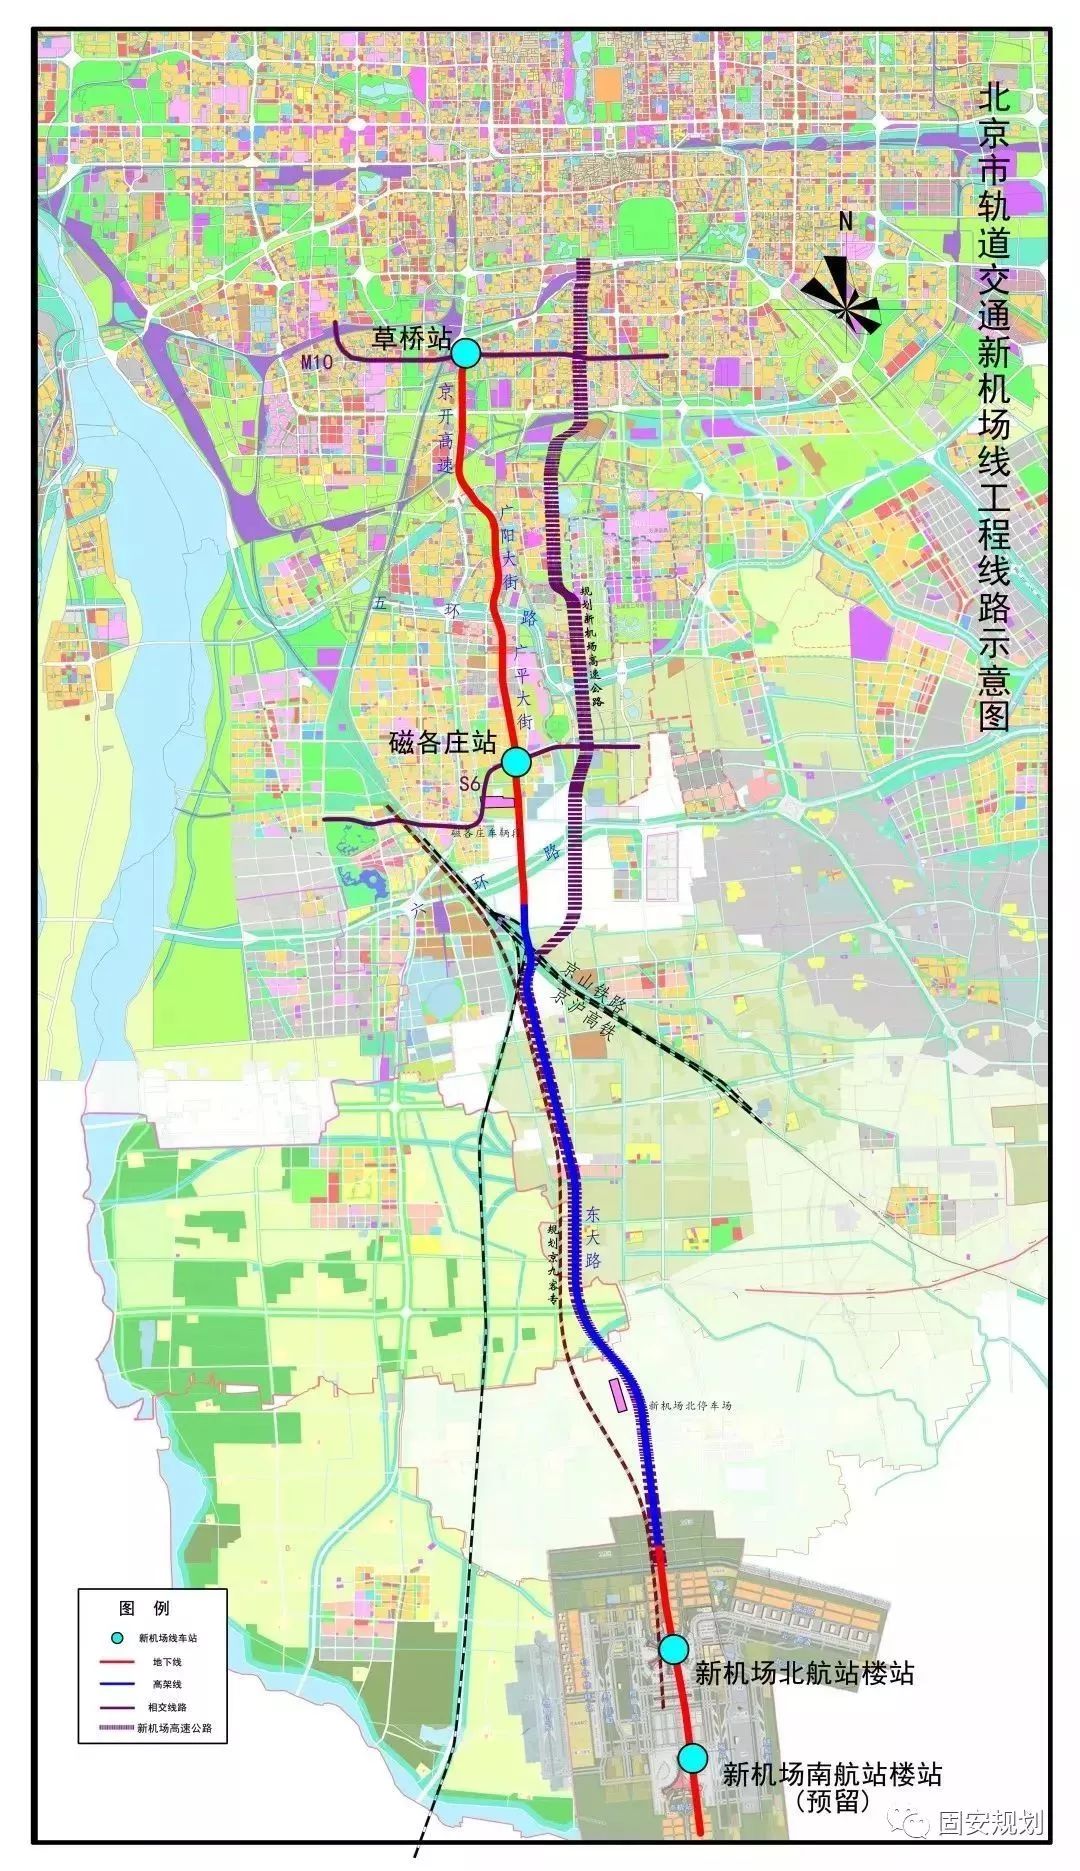 位于大兴区的磁各庄站未来可与规划中的北京市郊铁路s6线实现换乘.